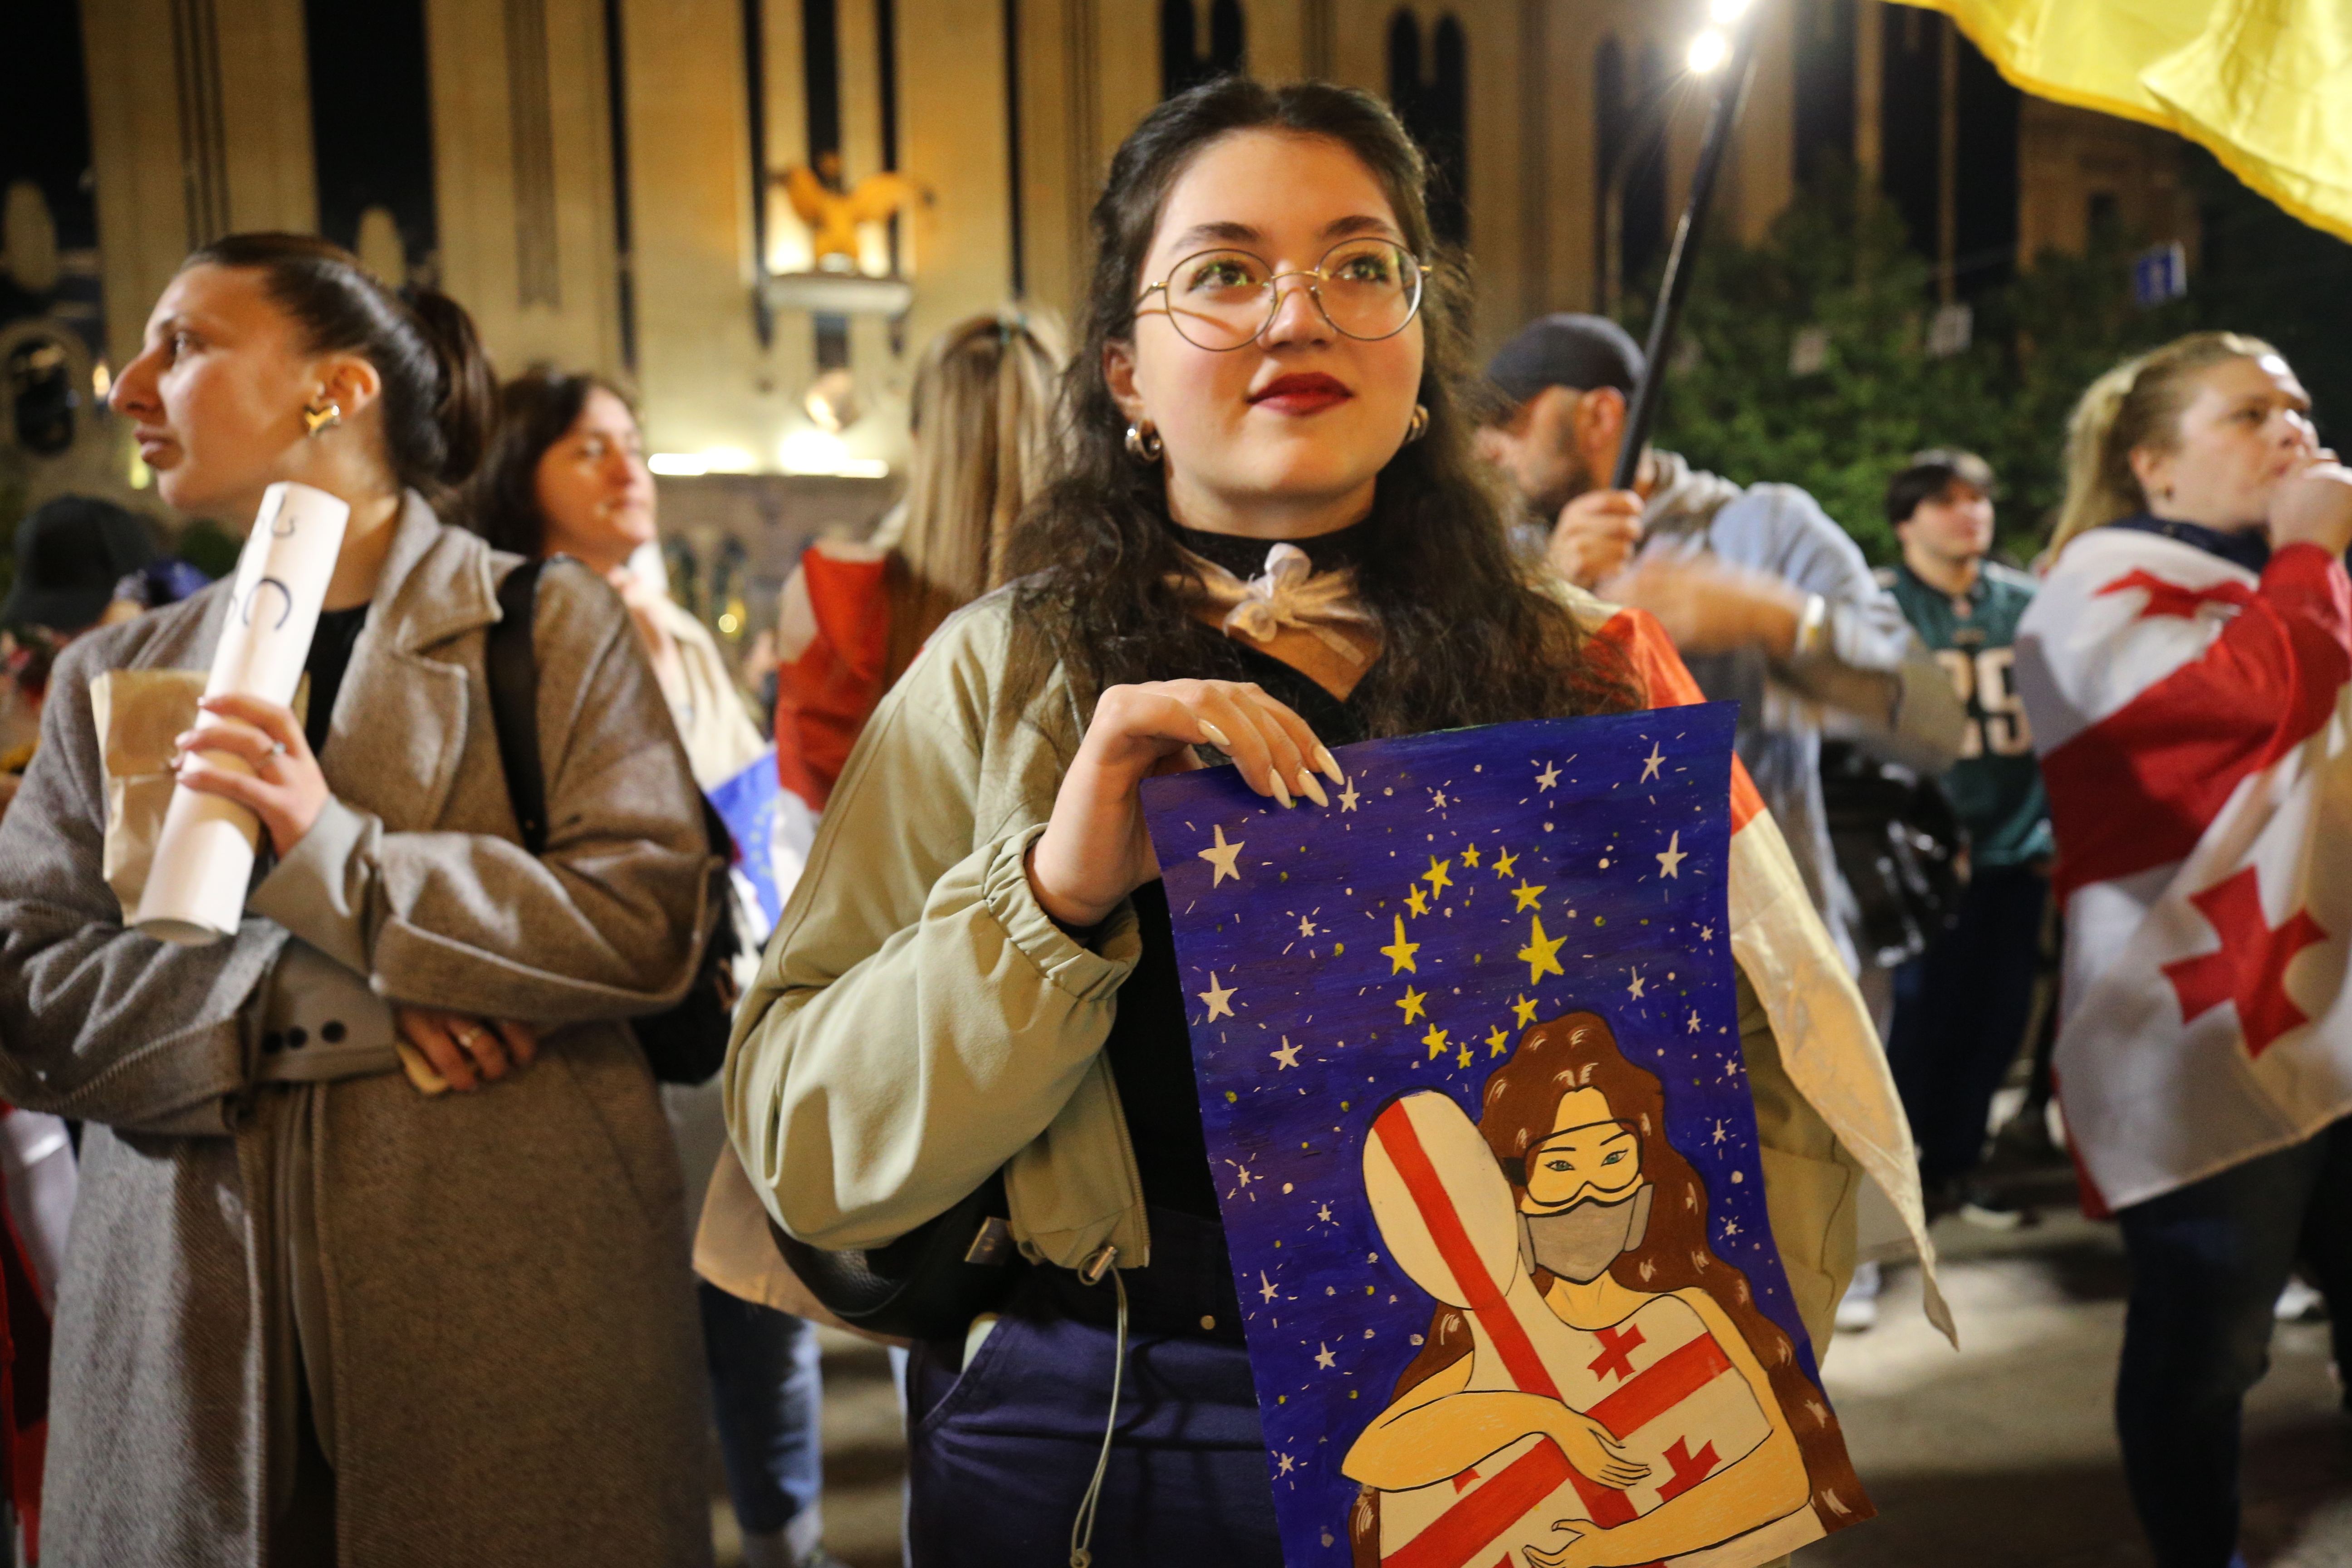 Eine junge Frau steht in mitten anderer Demonstrierenden und hält ein Plakat hoch, auf dem zwei sich umarmende Figuren, eine davon mit georgischer Flagge, vor blauem Nachthimmel und EU-Sternen zu sehen sind.